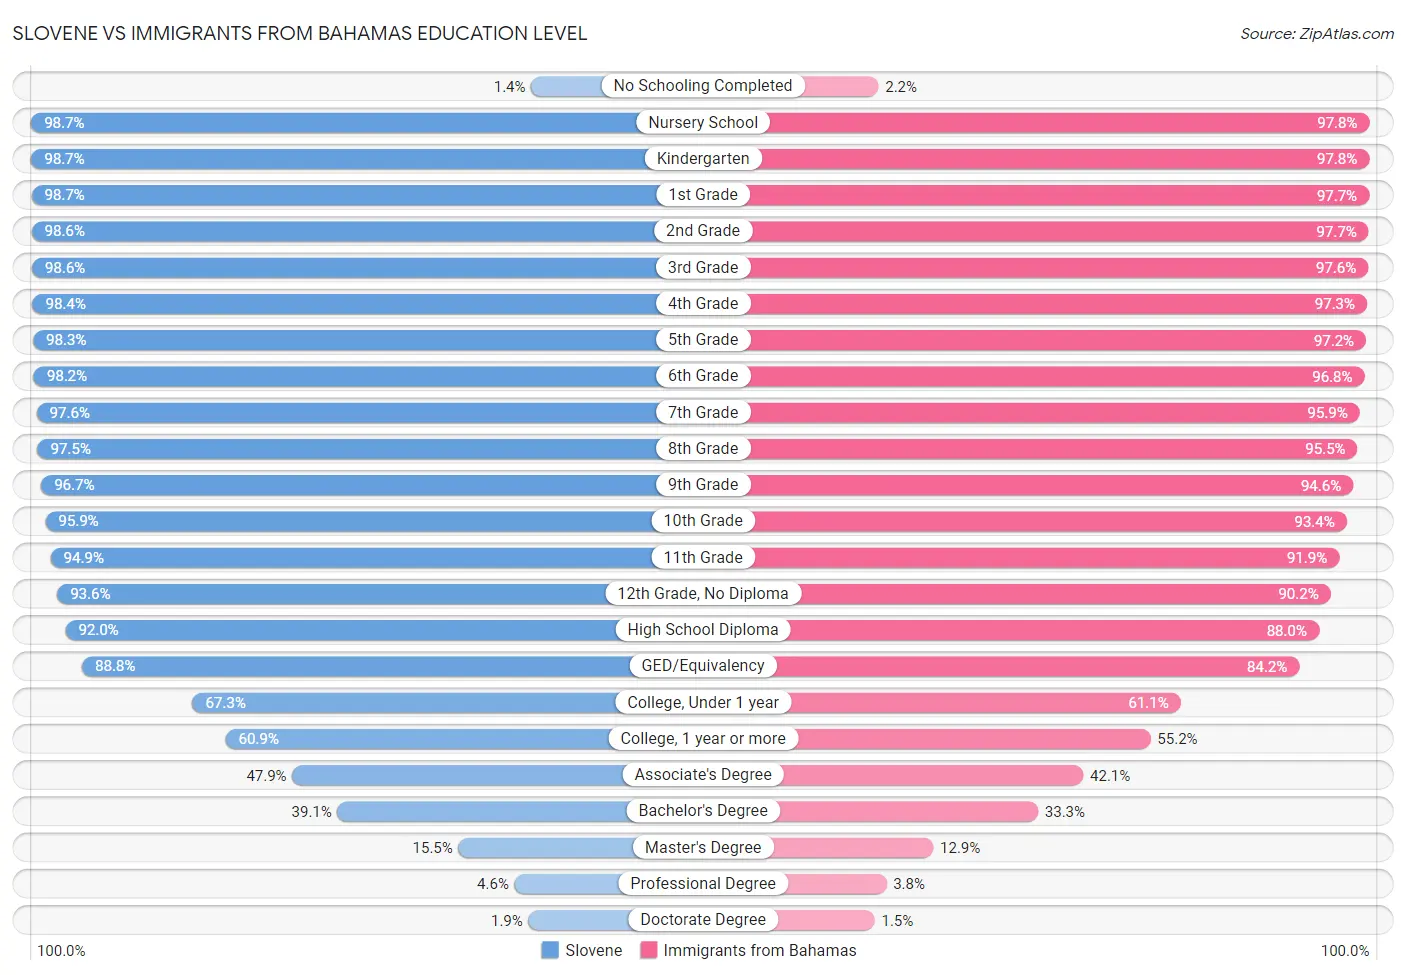 Slovene vs Immigrants from Bahamas Education Level